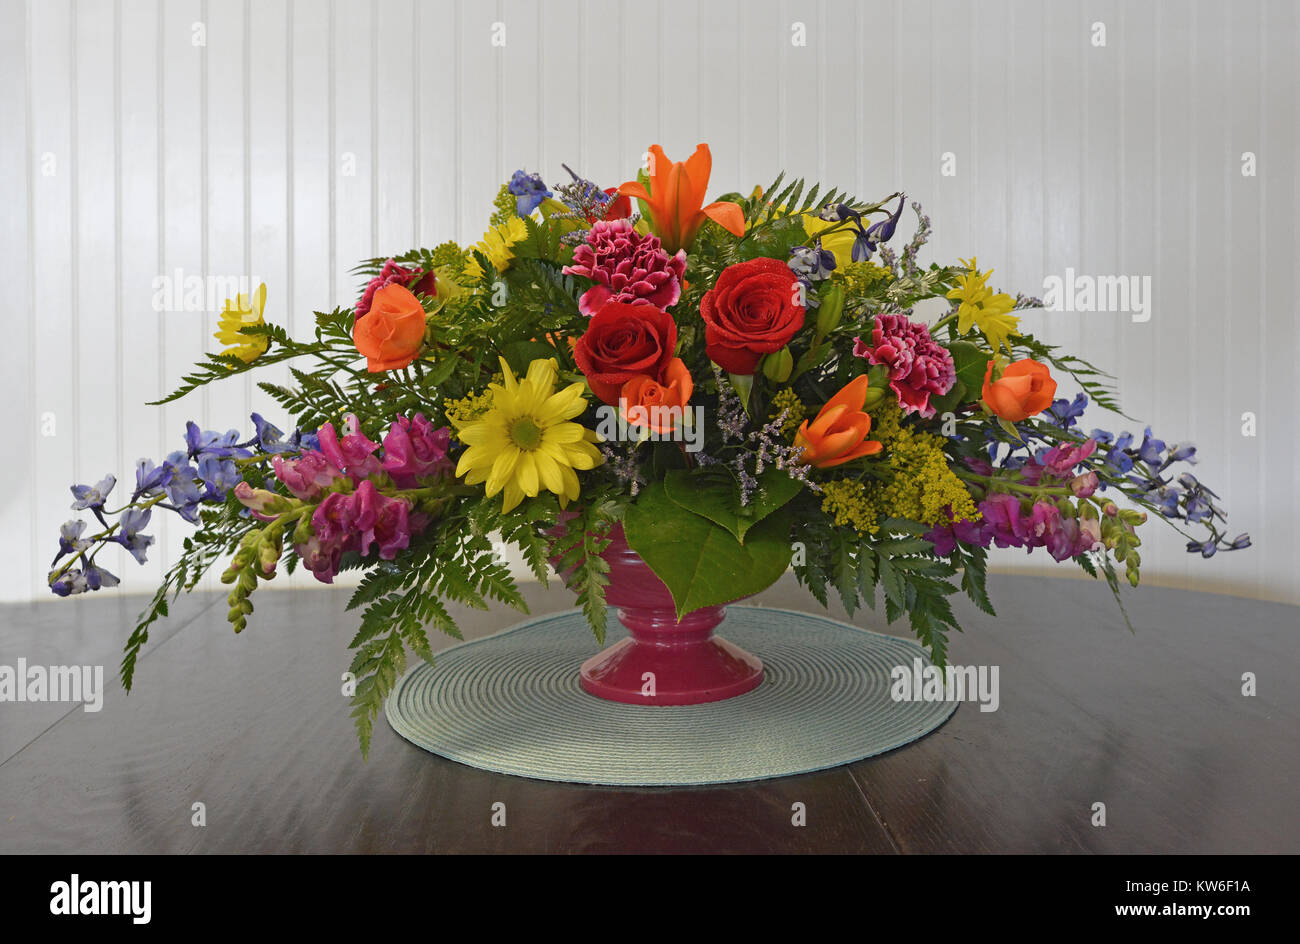 Eine bunte, horizontalen Mittelpunkt gefüllt mit Rosen, Lilien, Gänseblümchen, snapdragons, Rittersporn und Kaskadierung Laub auf einem Tisch gegen weiße Holz. Stockfoto